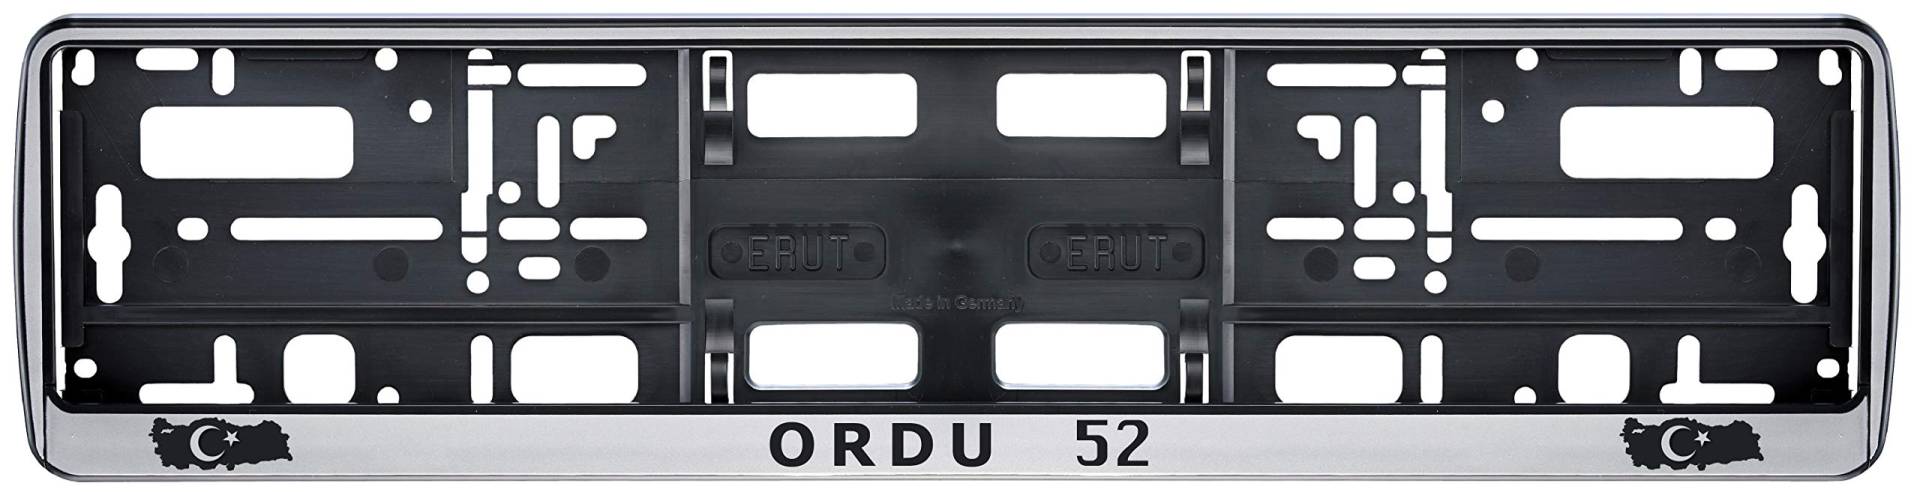 Auto Kennzeichenhalter in der Farbe Silber/Schwarz Nummernschildhalterung Auto, Nummernschildhalter Türkei Flagge 52 Ordu 2 Stück von aina